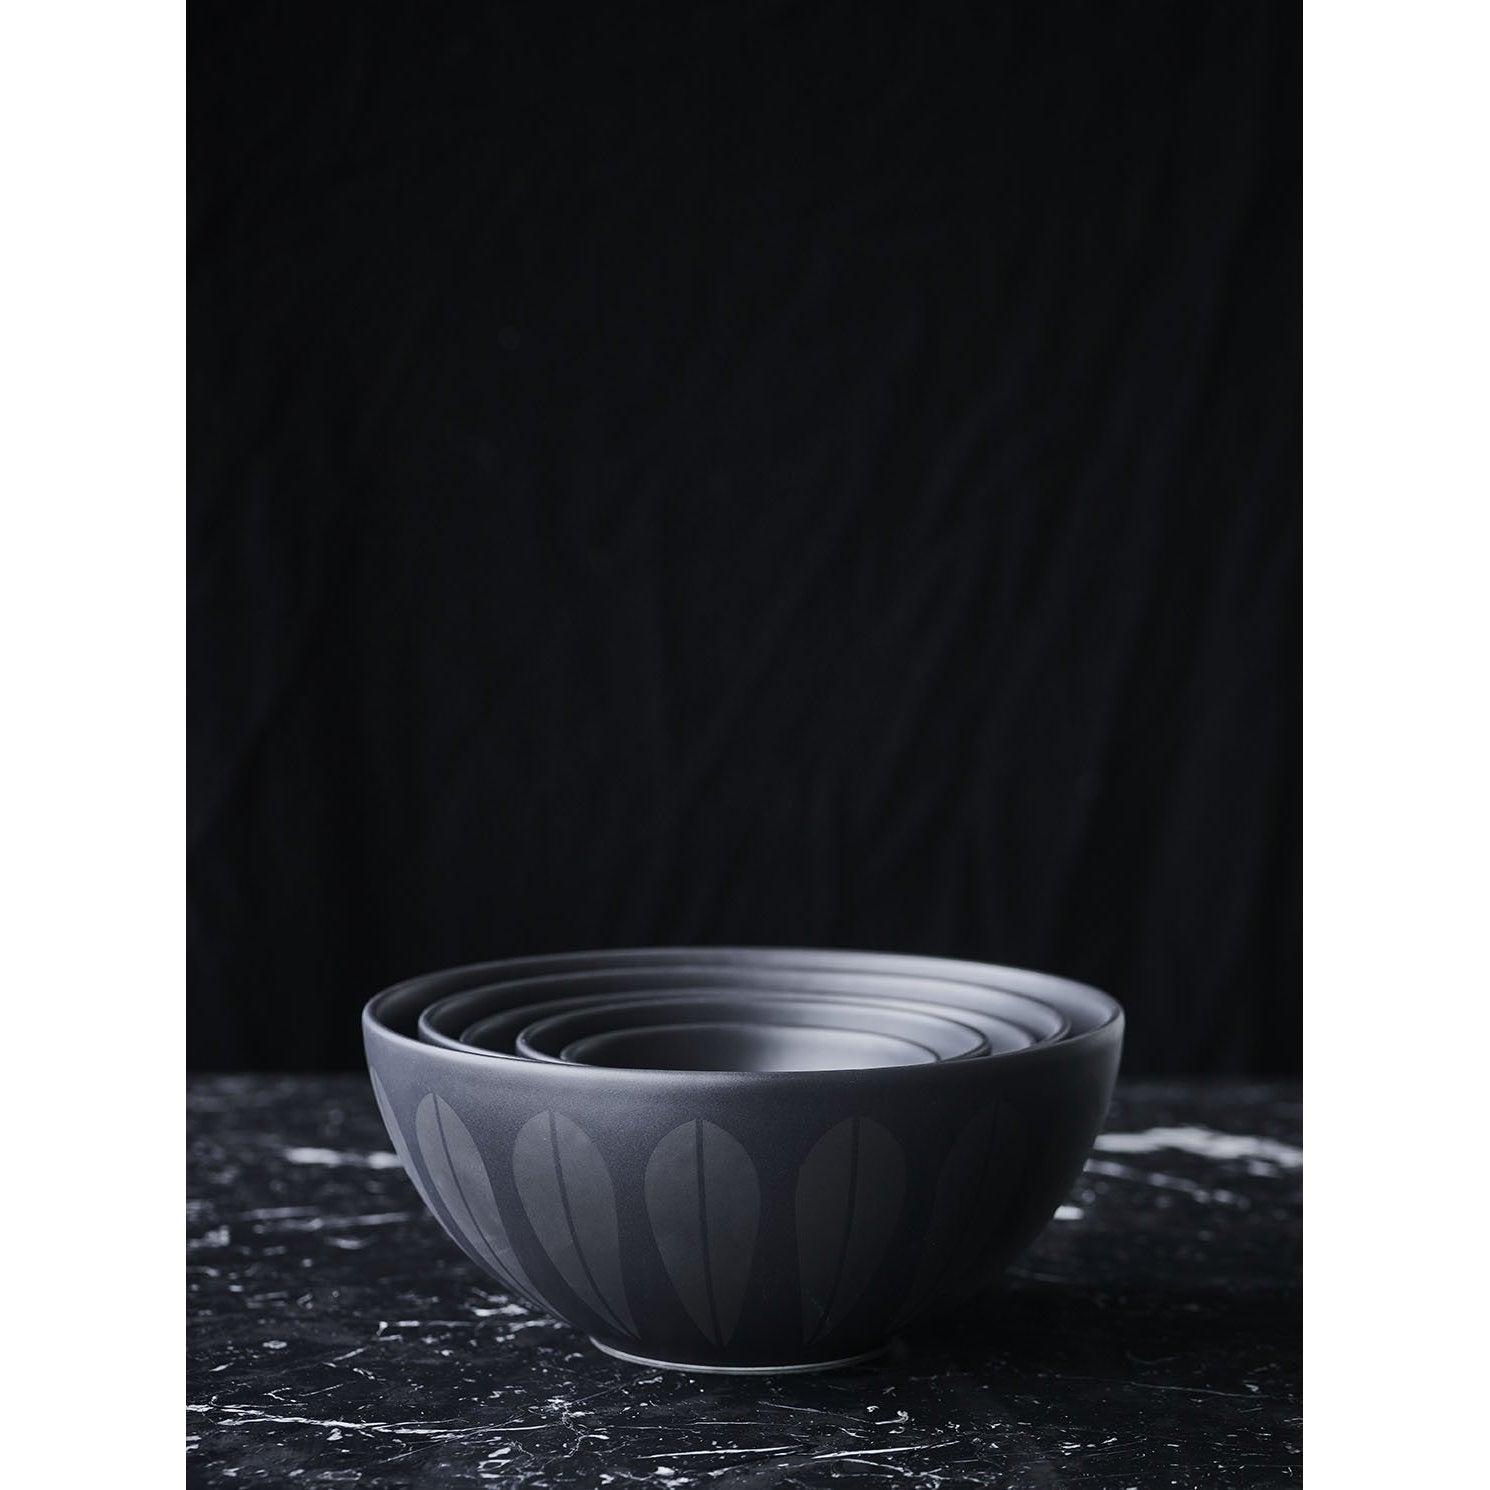 Lucie Kaas Arne Clausen Bowl mörkröd, 12 cm